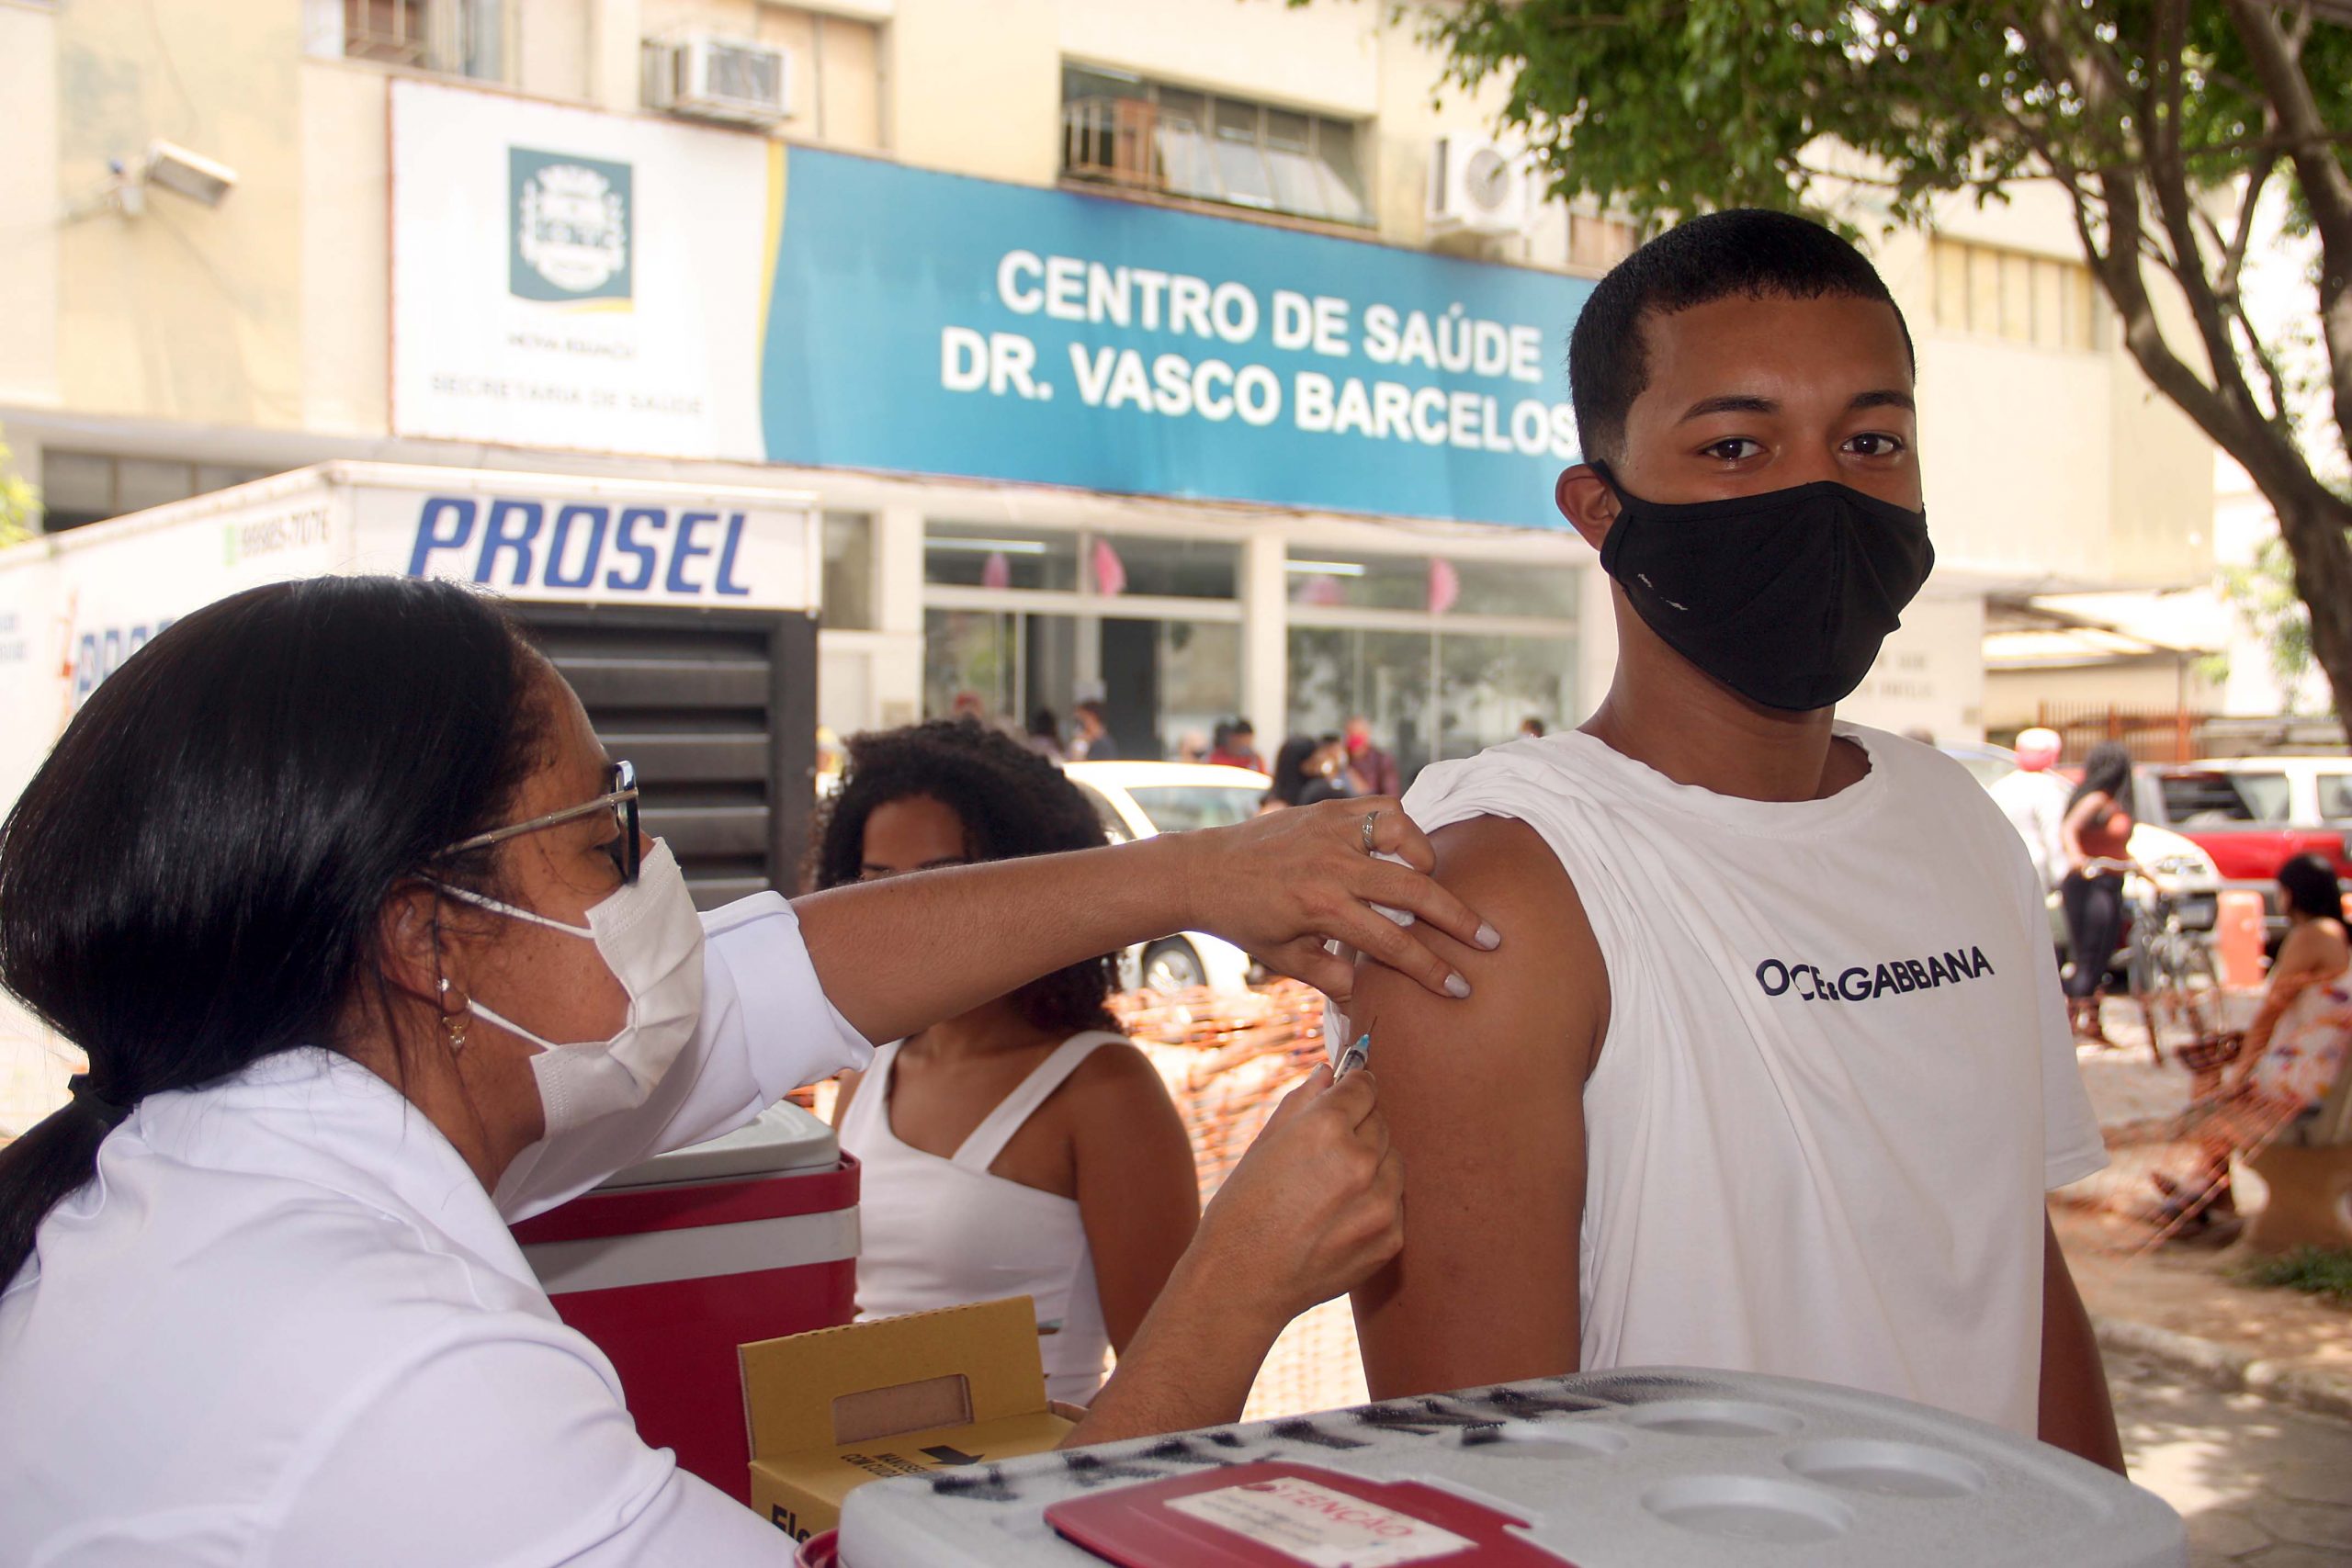 Nova Iguaçu vacina com dose de reforço pessoas acima de 55 anos contra COVID-19 nesta sexta-feira